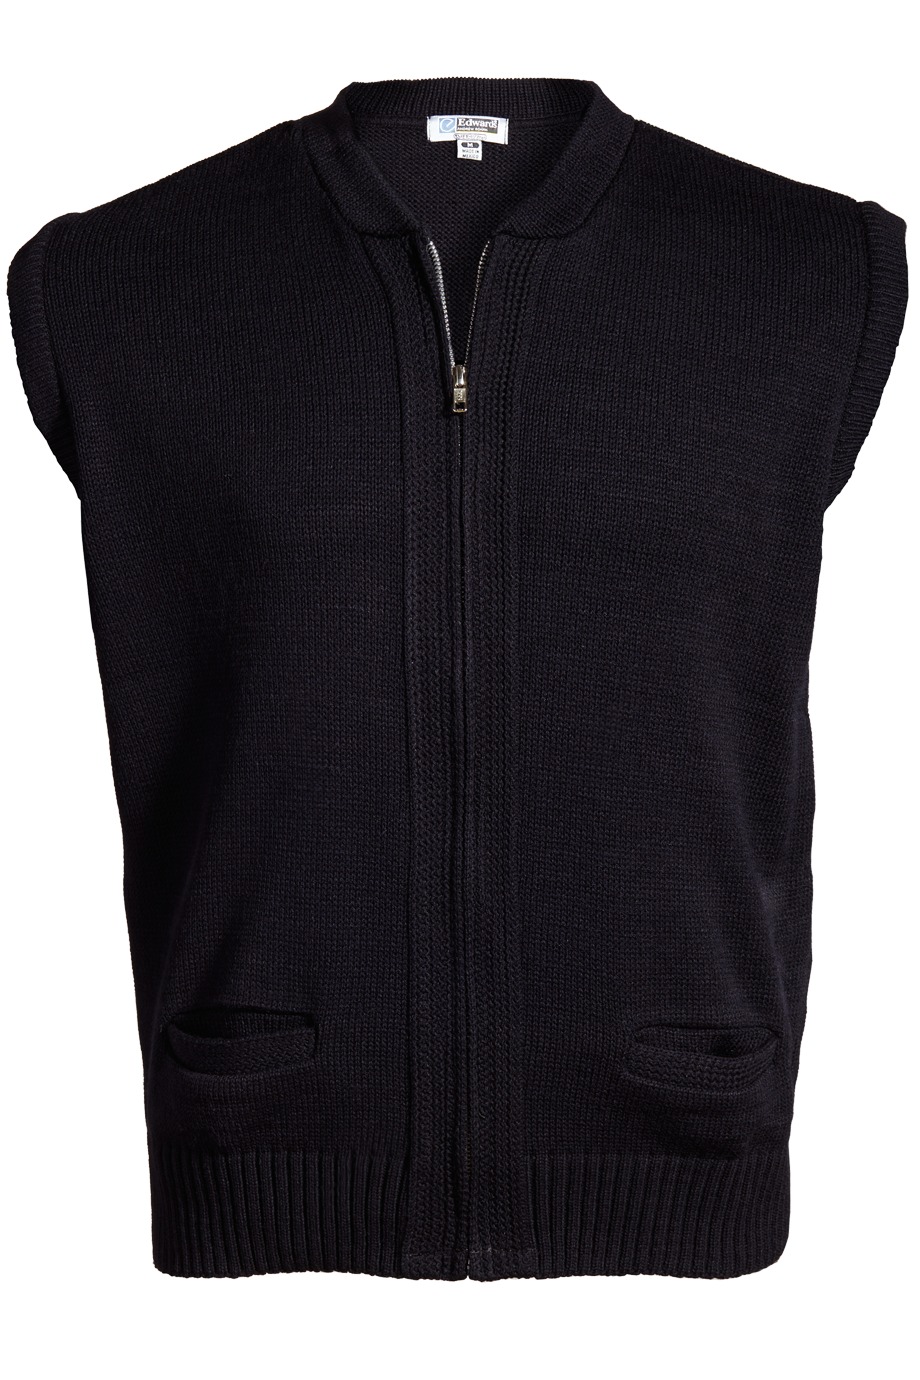 Edwards Garment 301 - Light Weight Zipper Vest